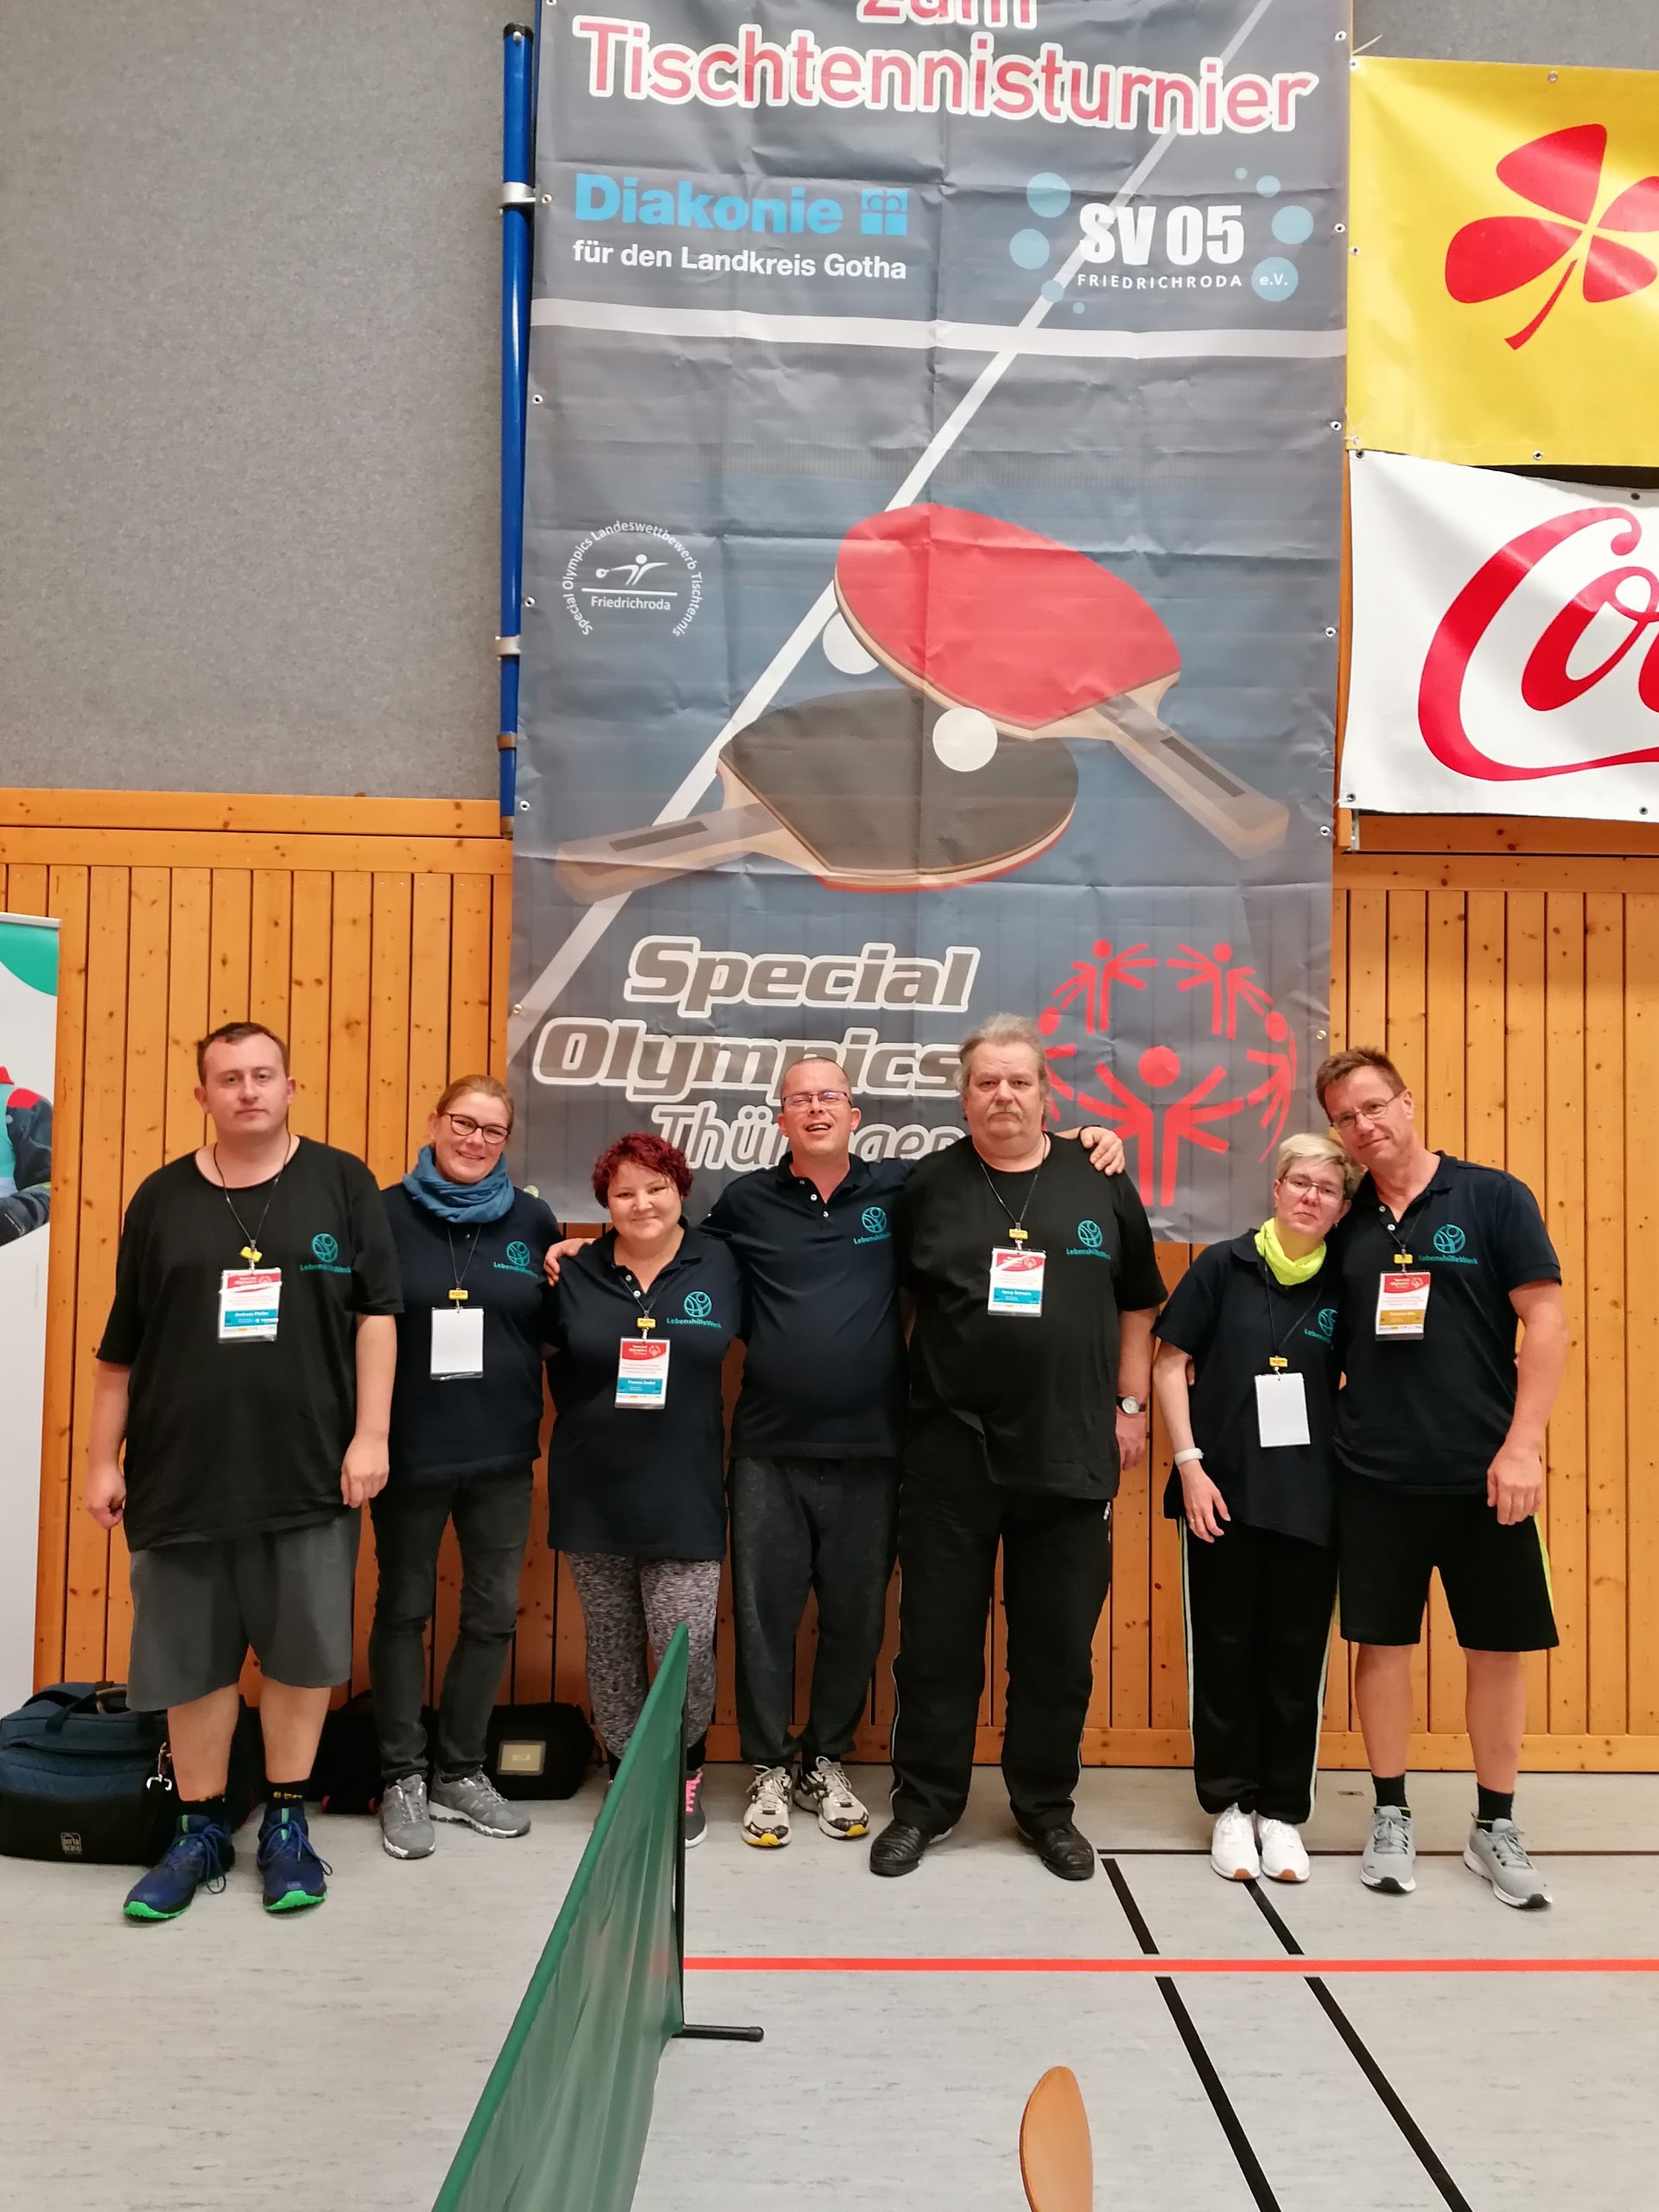 Special Olympics Landeswettbewerb Tischtennis- Thüringen in Friedrichroda